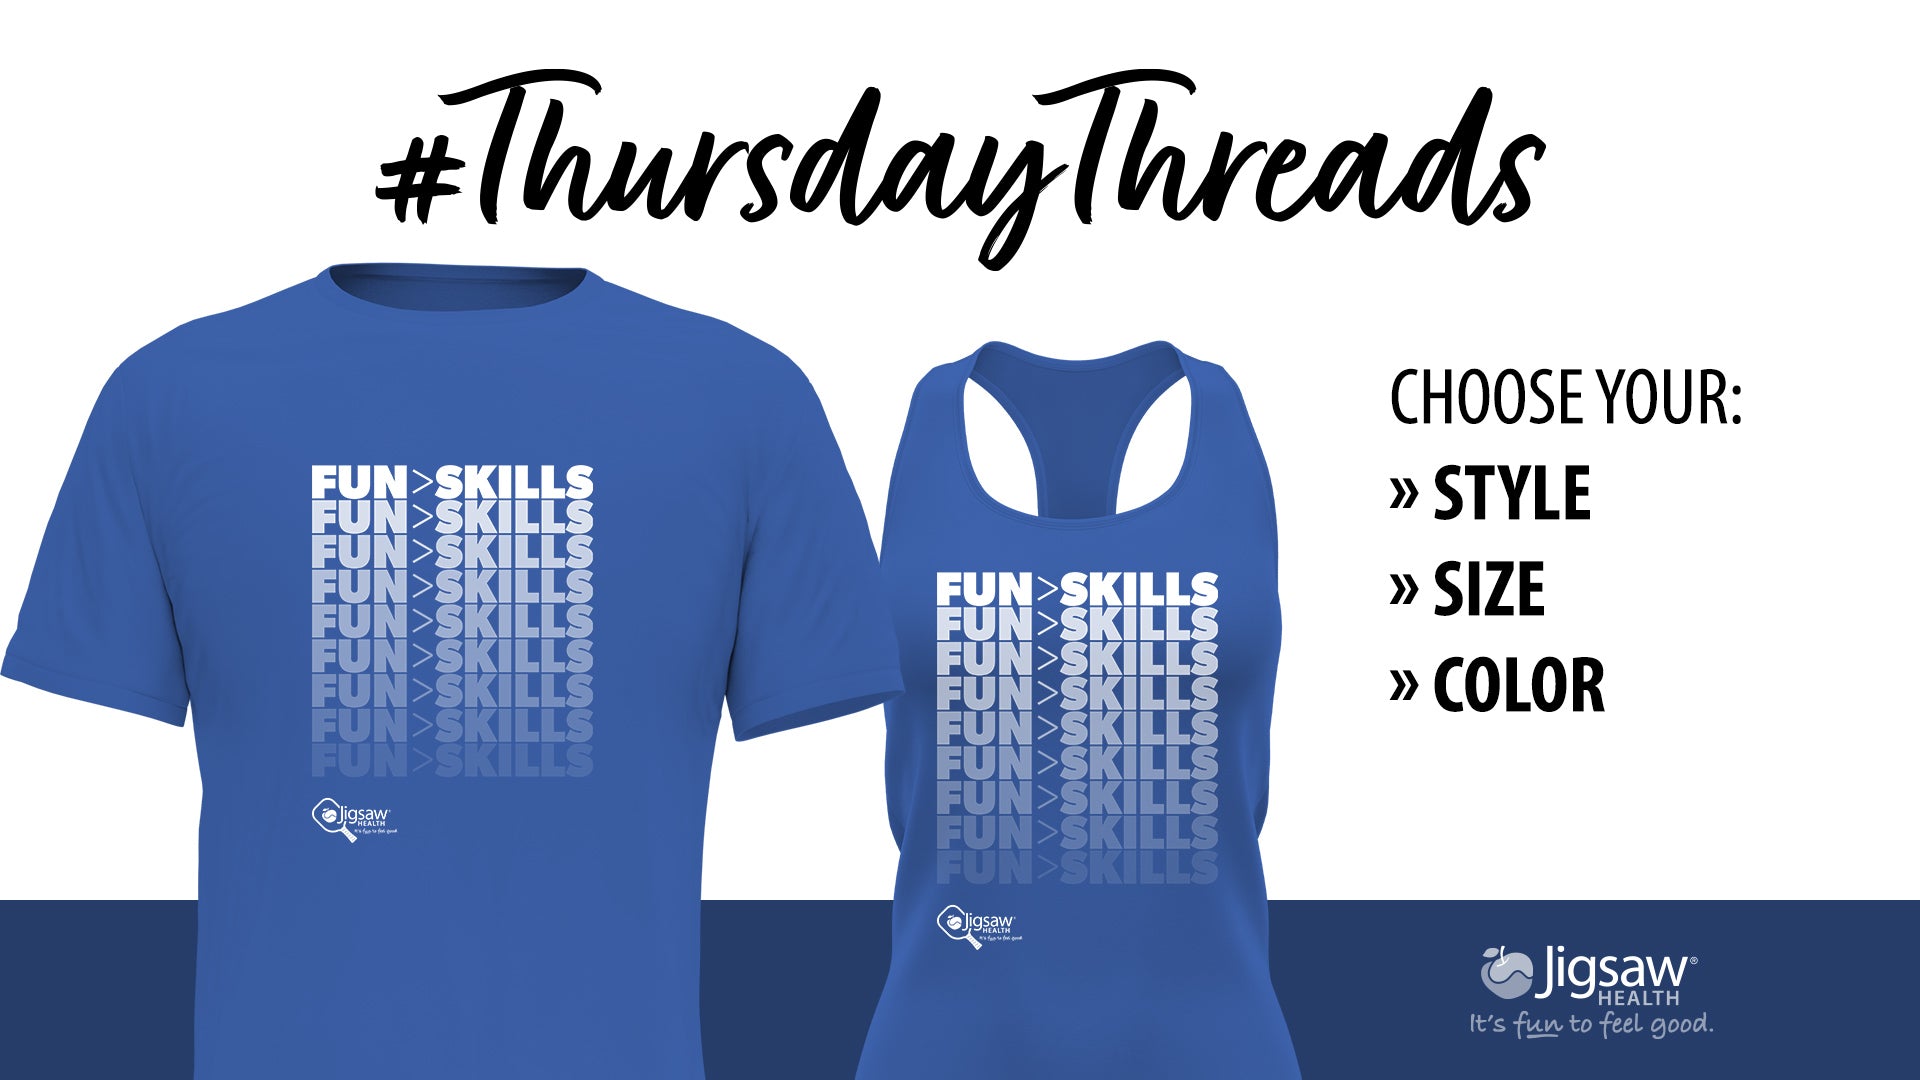 Fun > Skills | #ThursdayThreads